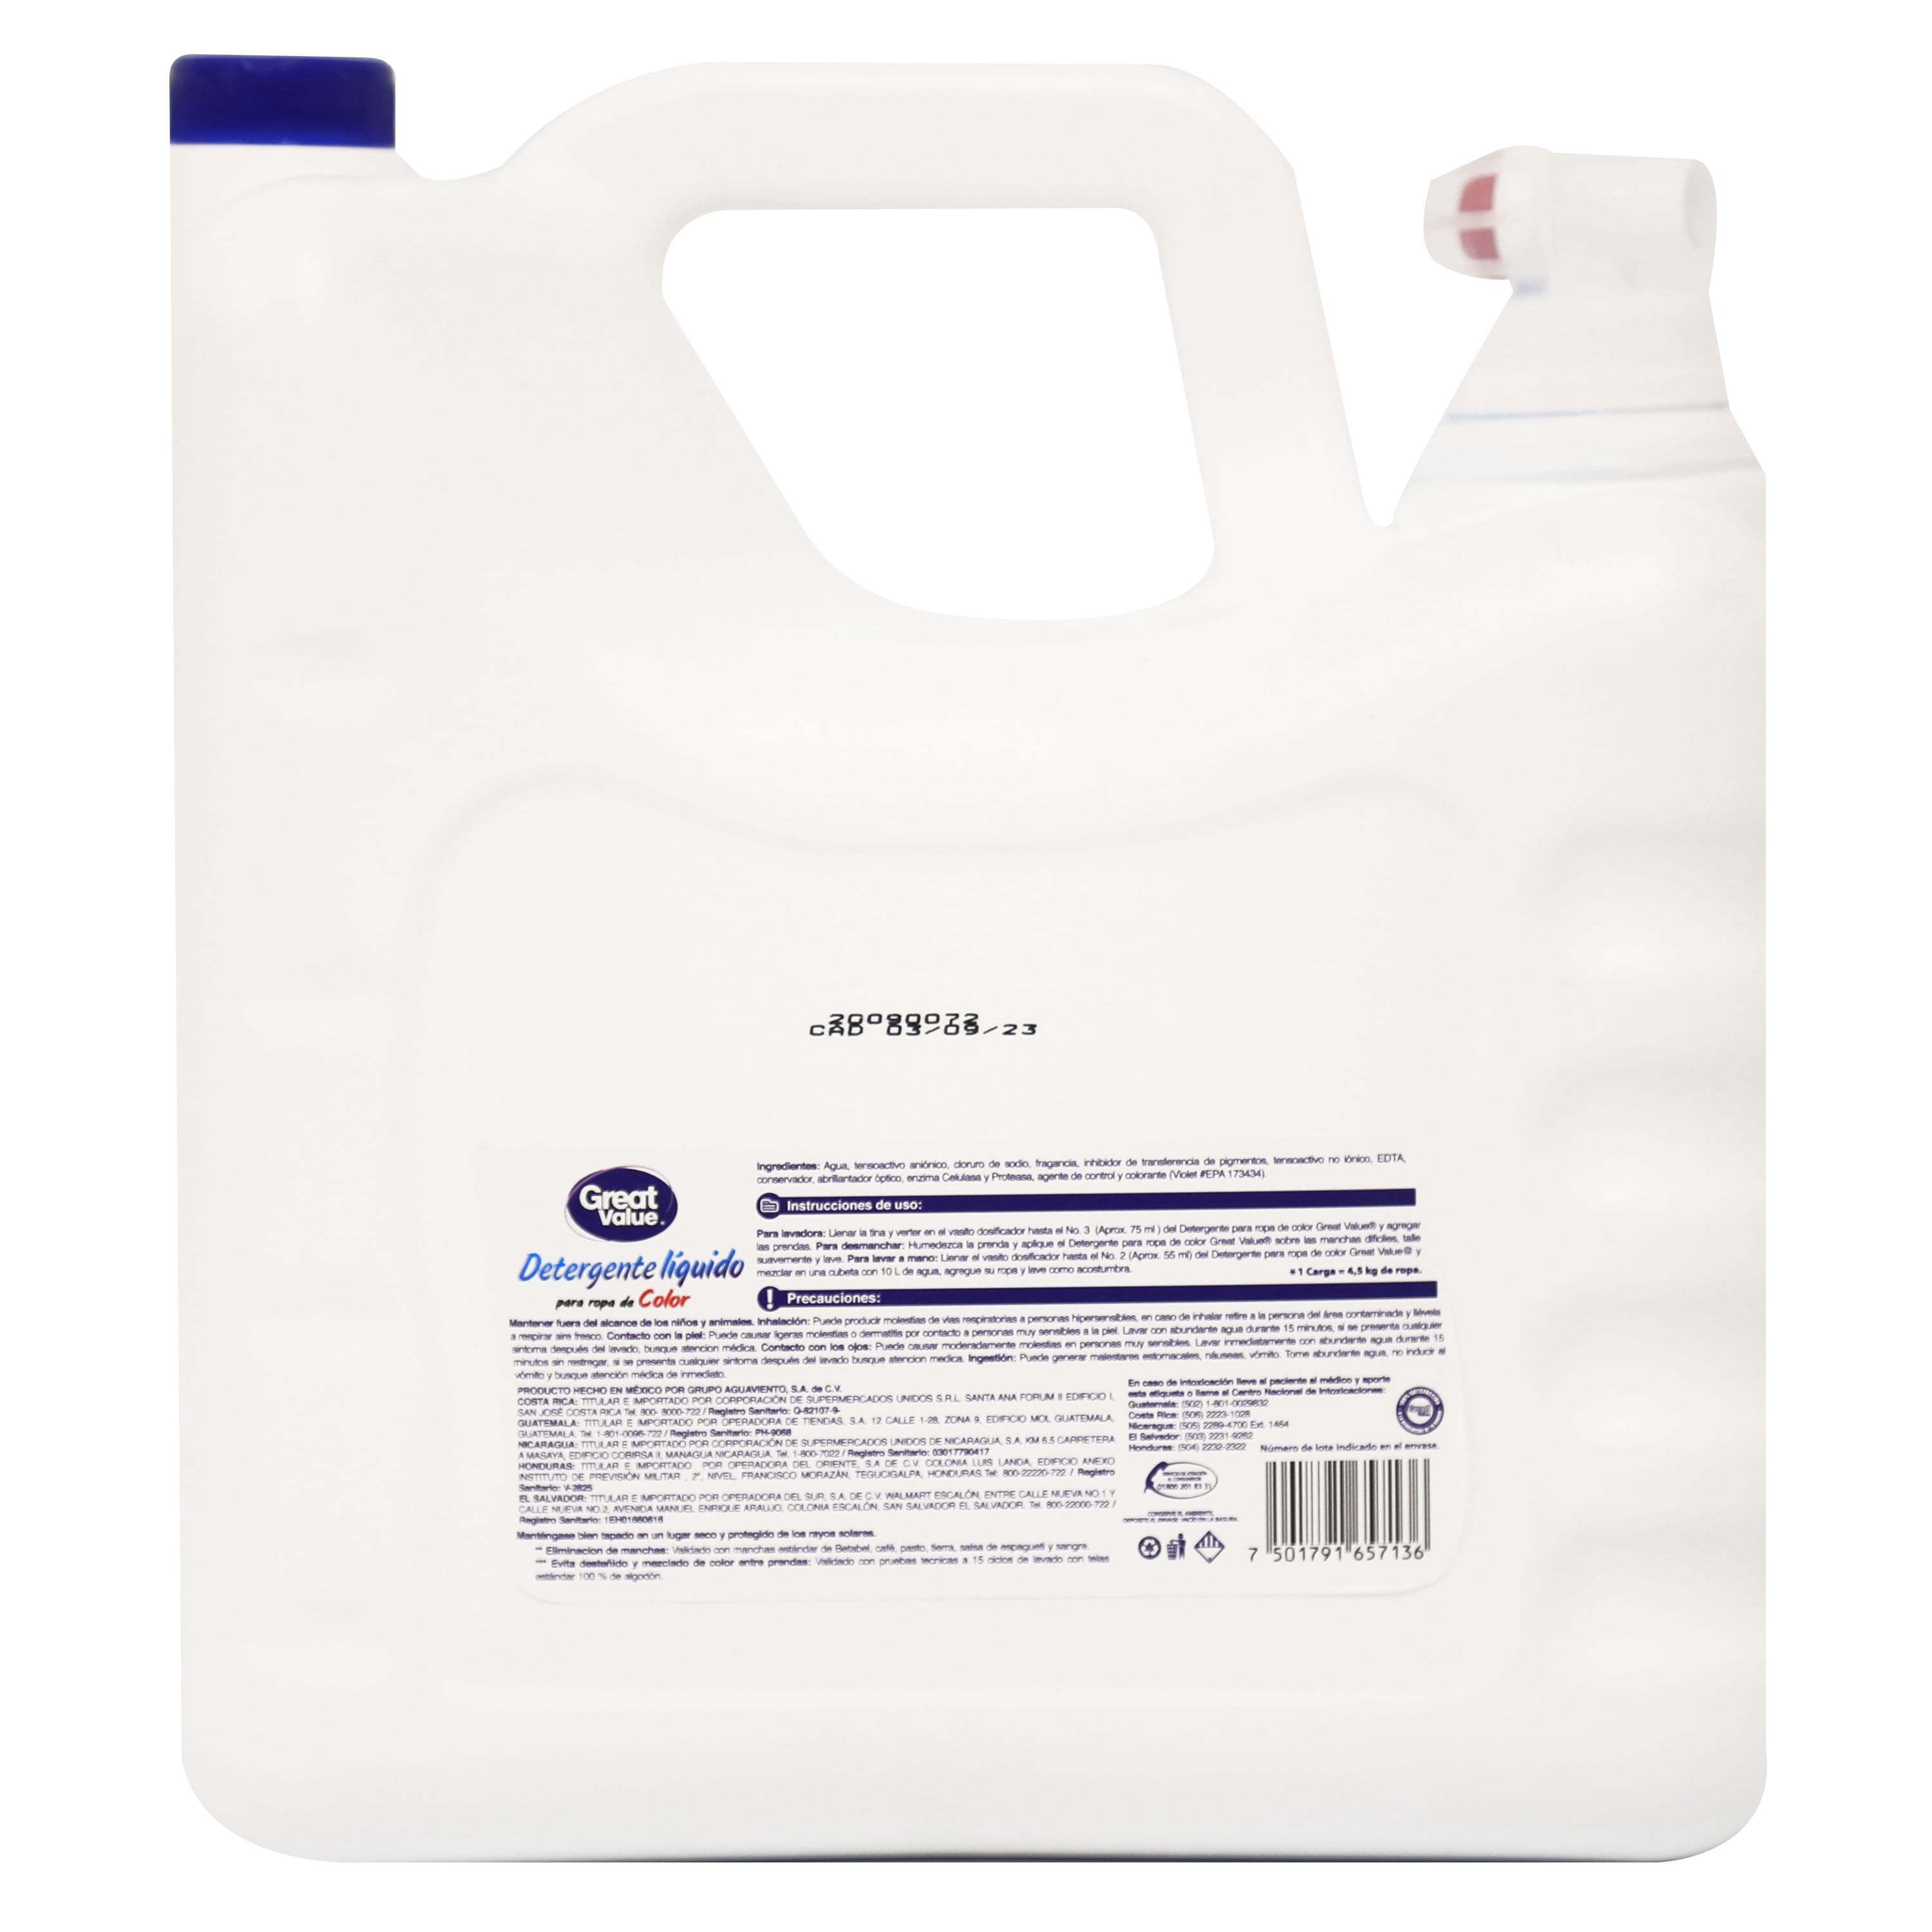 DETERGENTE LIQUIDO LAVADORA – Detergentes Solyeco, productos de limpieza y  de higiene.